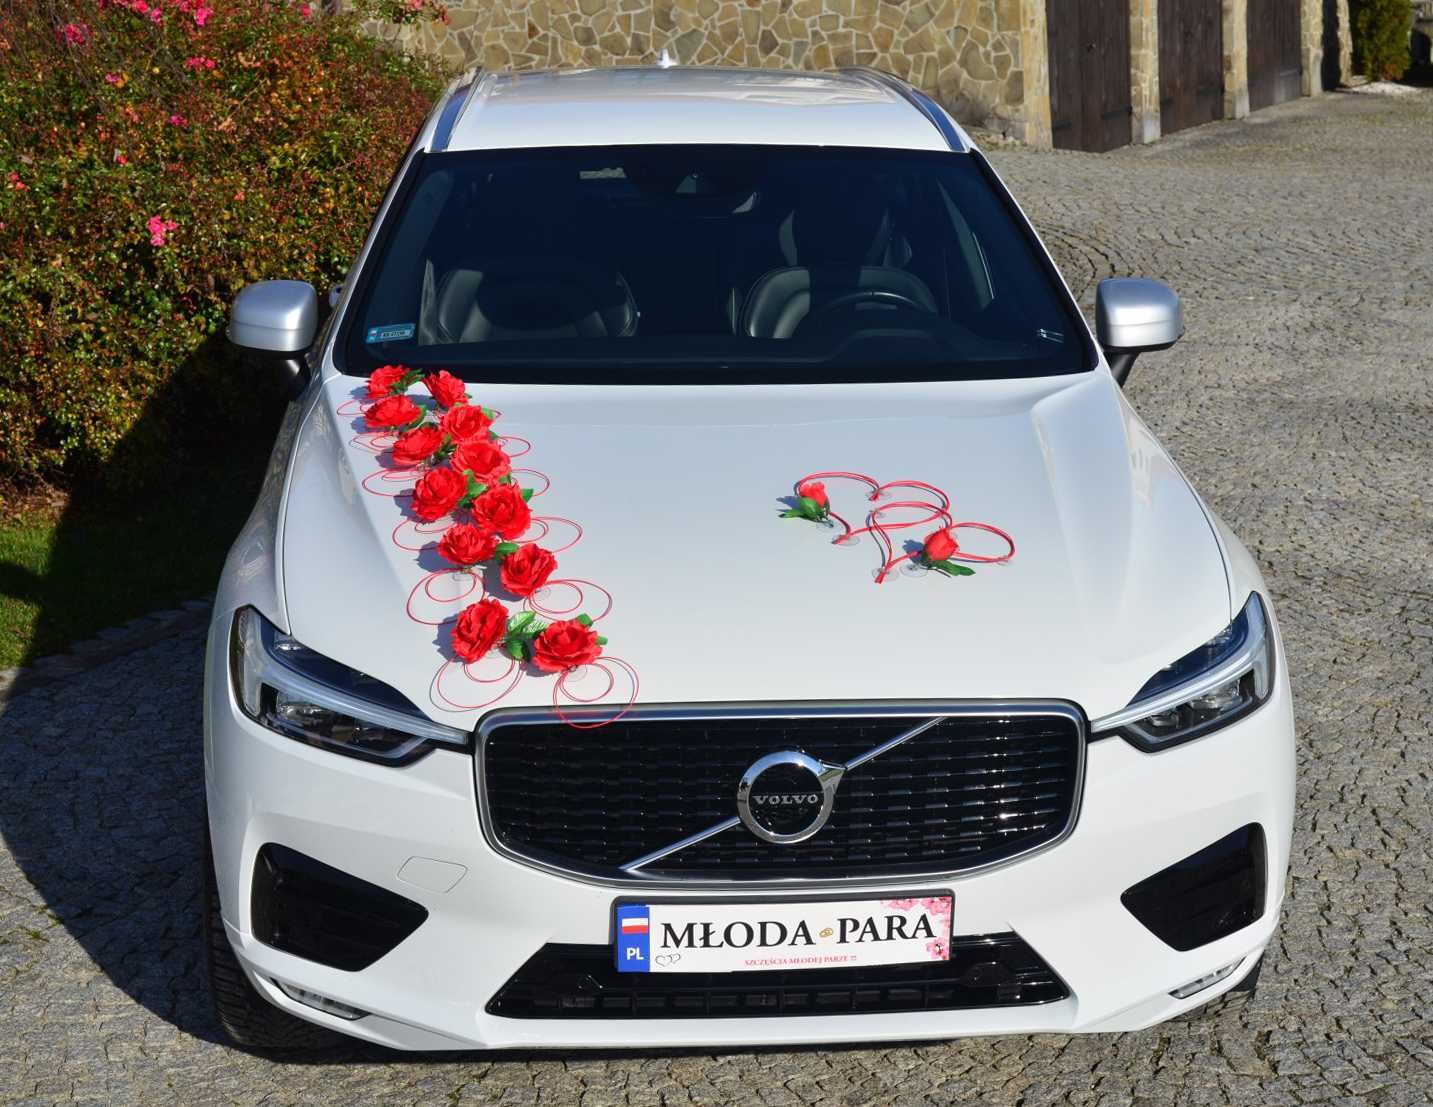 Piękna czerwona ozdoba dekoracja na auto do ślubu.POLECAMY 320